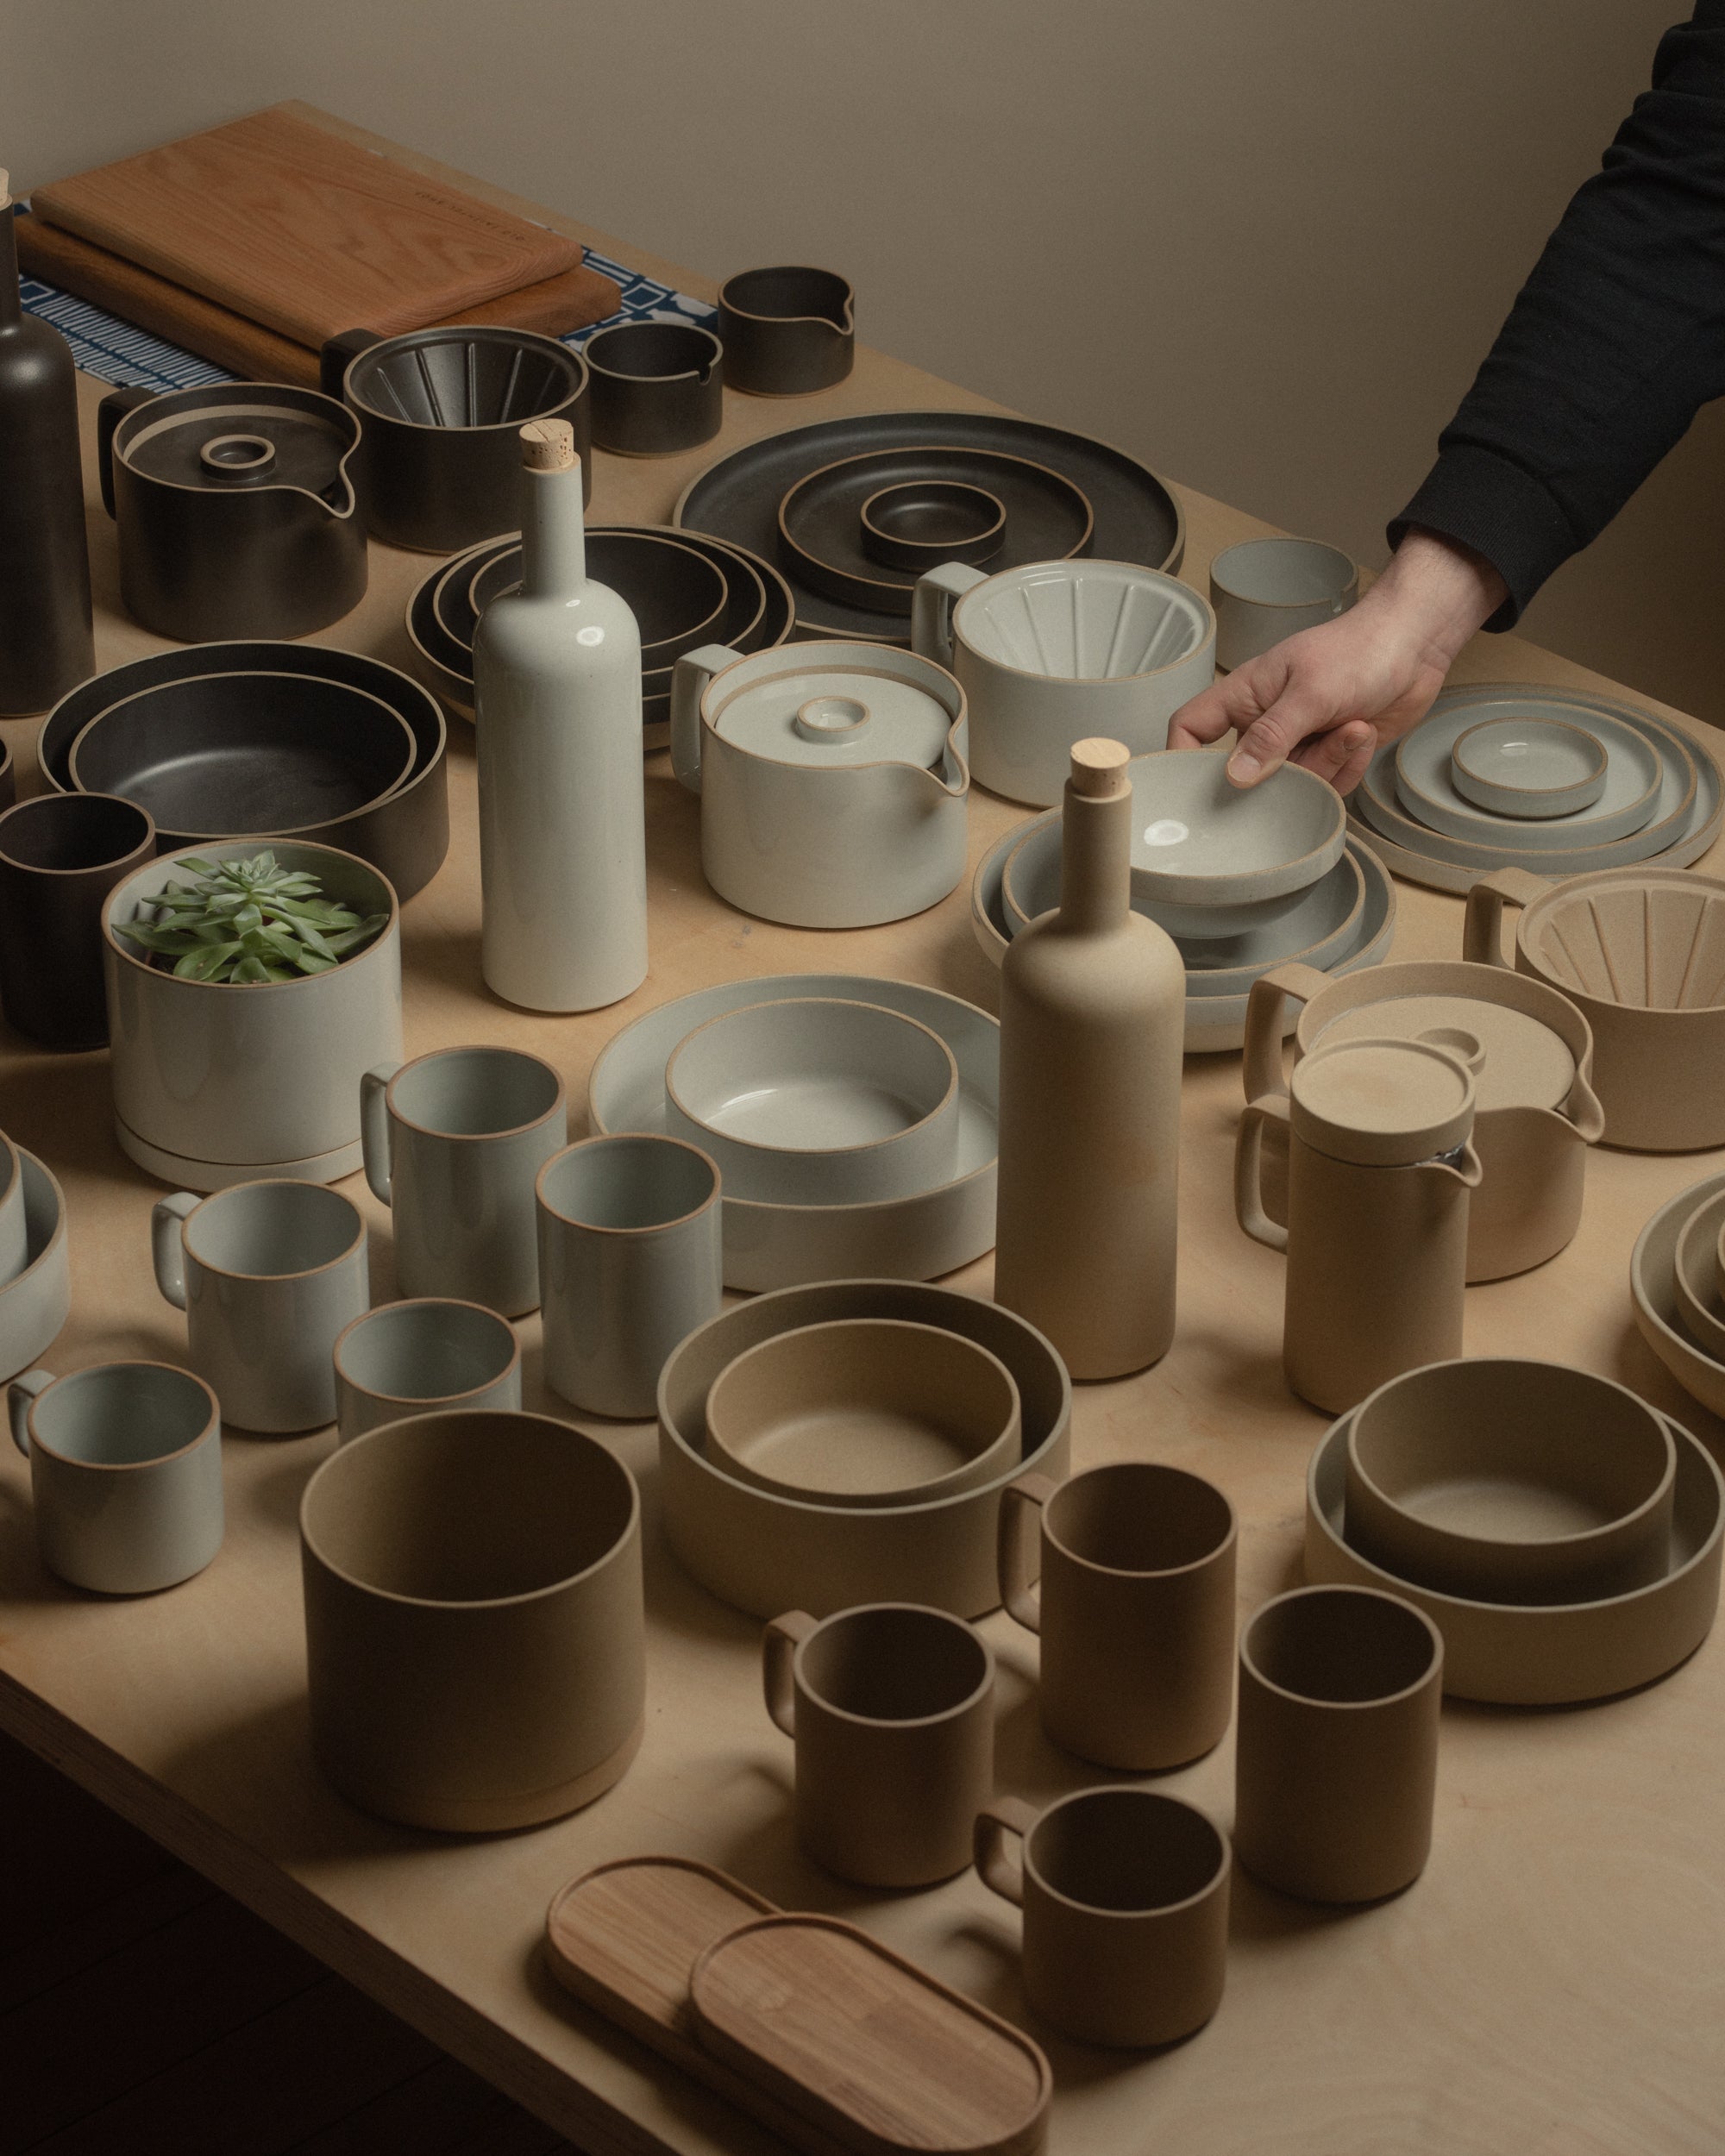 Toyo Sasaki Circle Glass Tumbler 19 oz (Set of 6) – Heath Ceramics